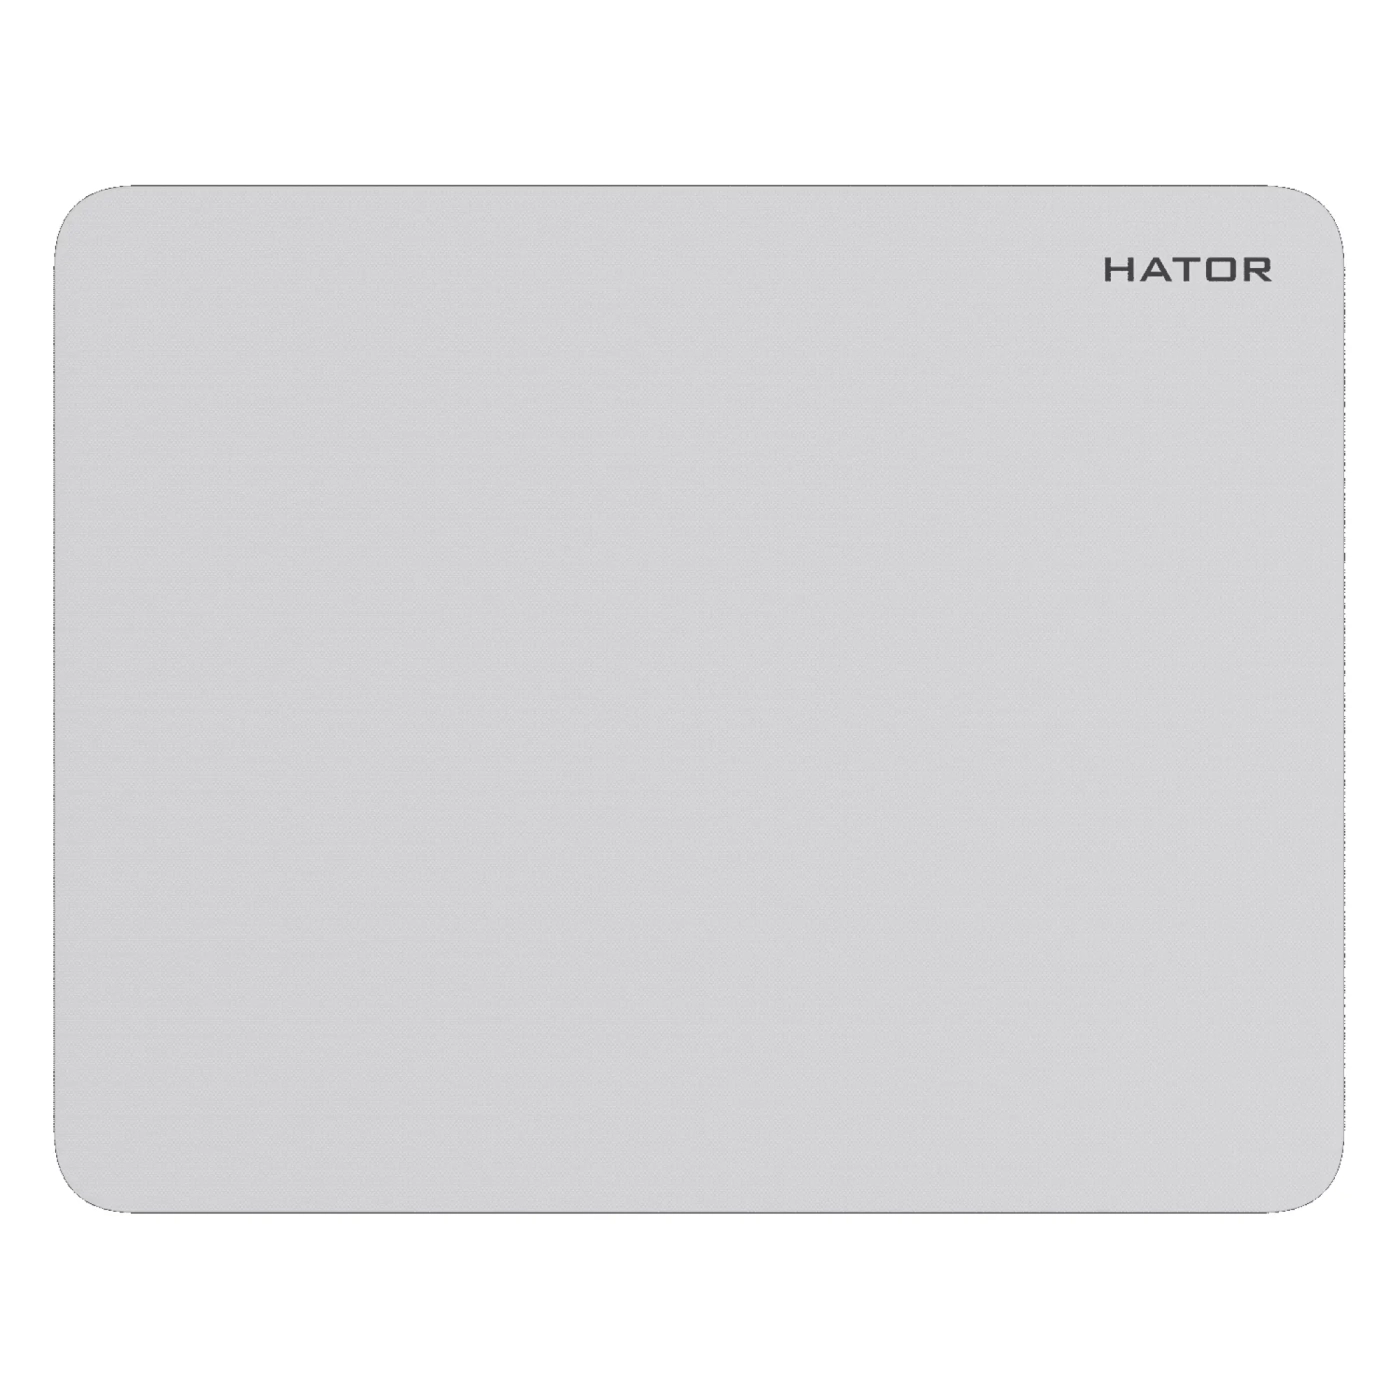 Купить Игровая поверхность HATOR Tonn Mobile White (HTP-1001) - фото 1